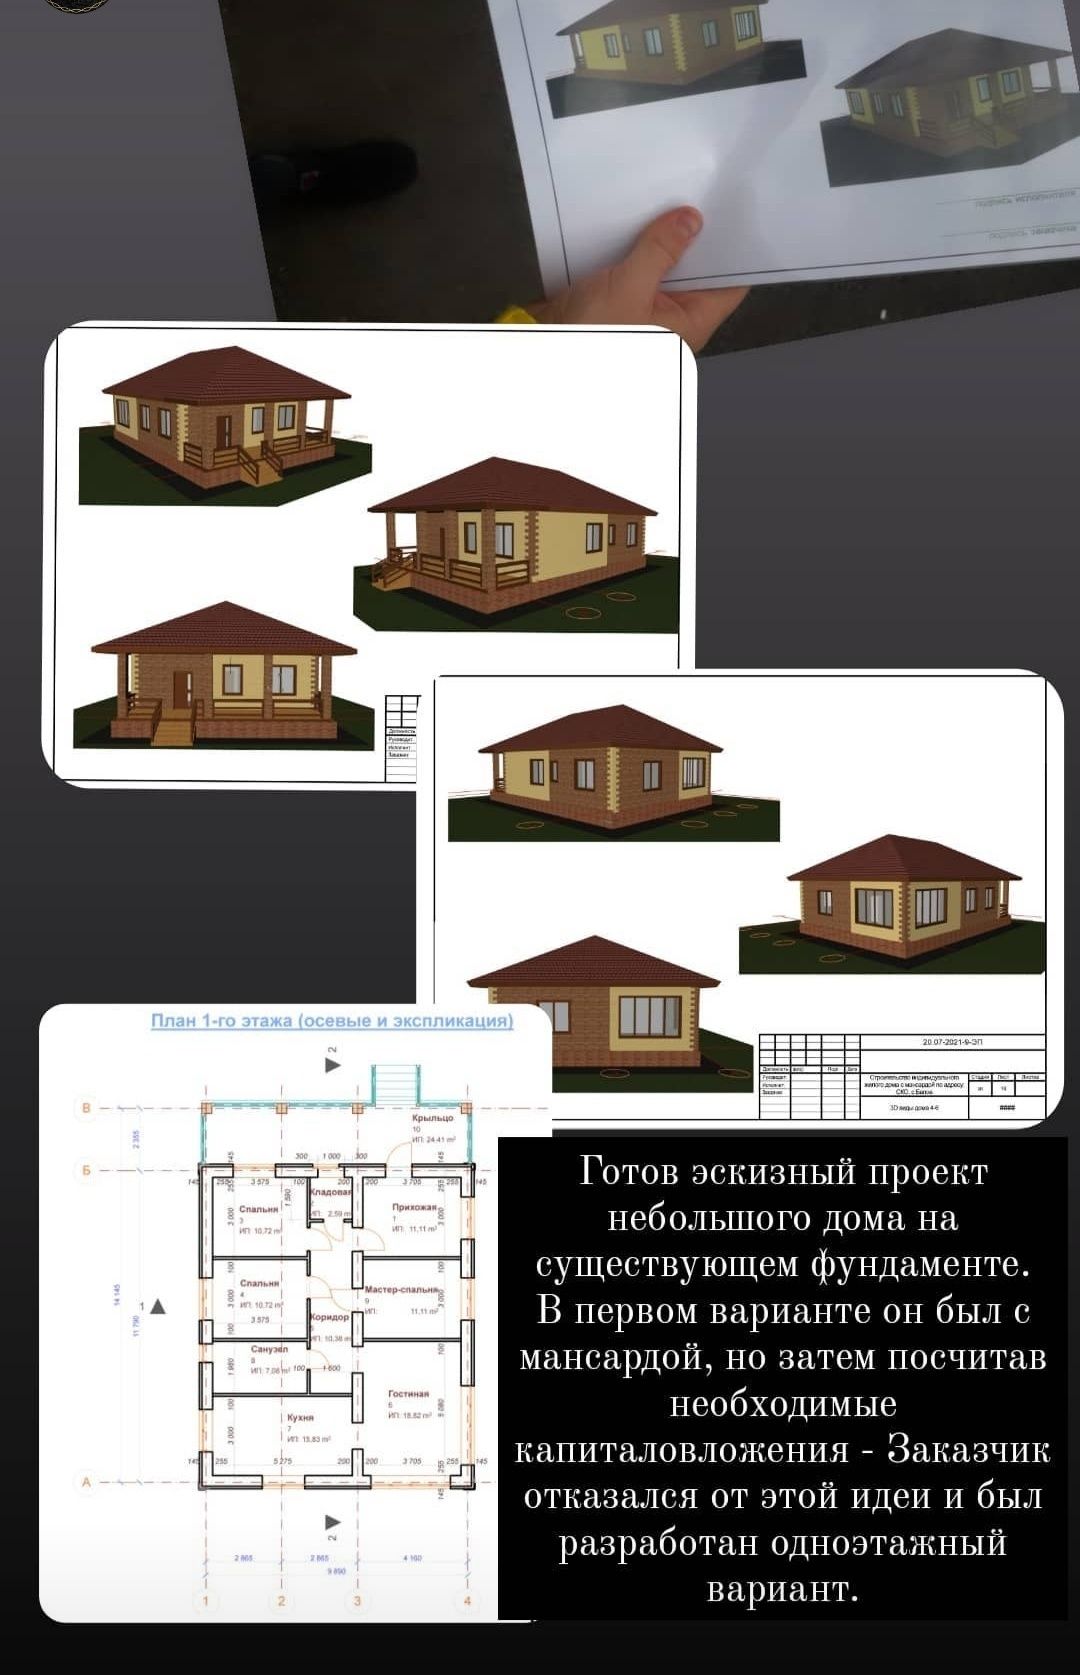 Эскизный проект дом, дача, баня, гараж. Проект. Эскиз. 3D Визуализация